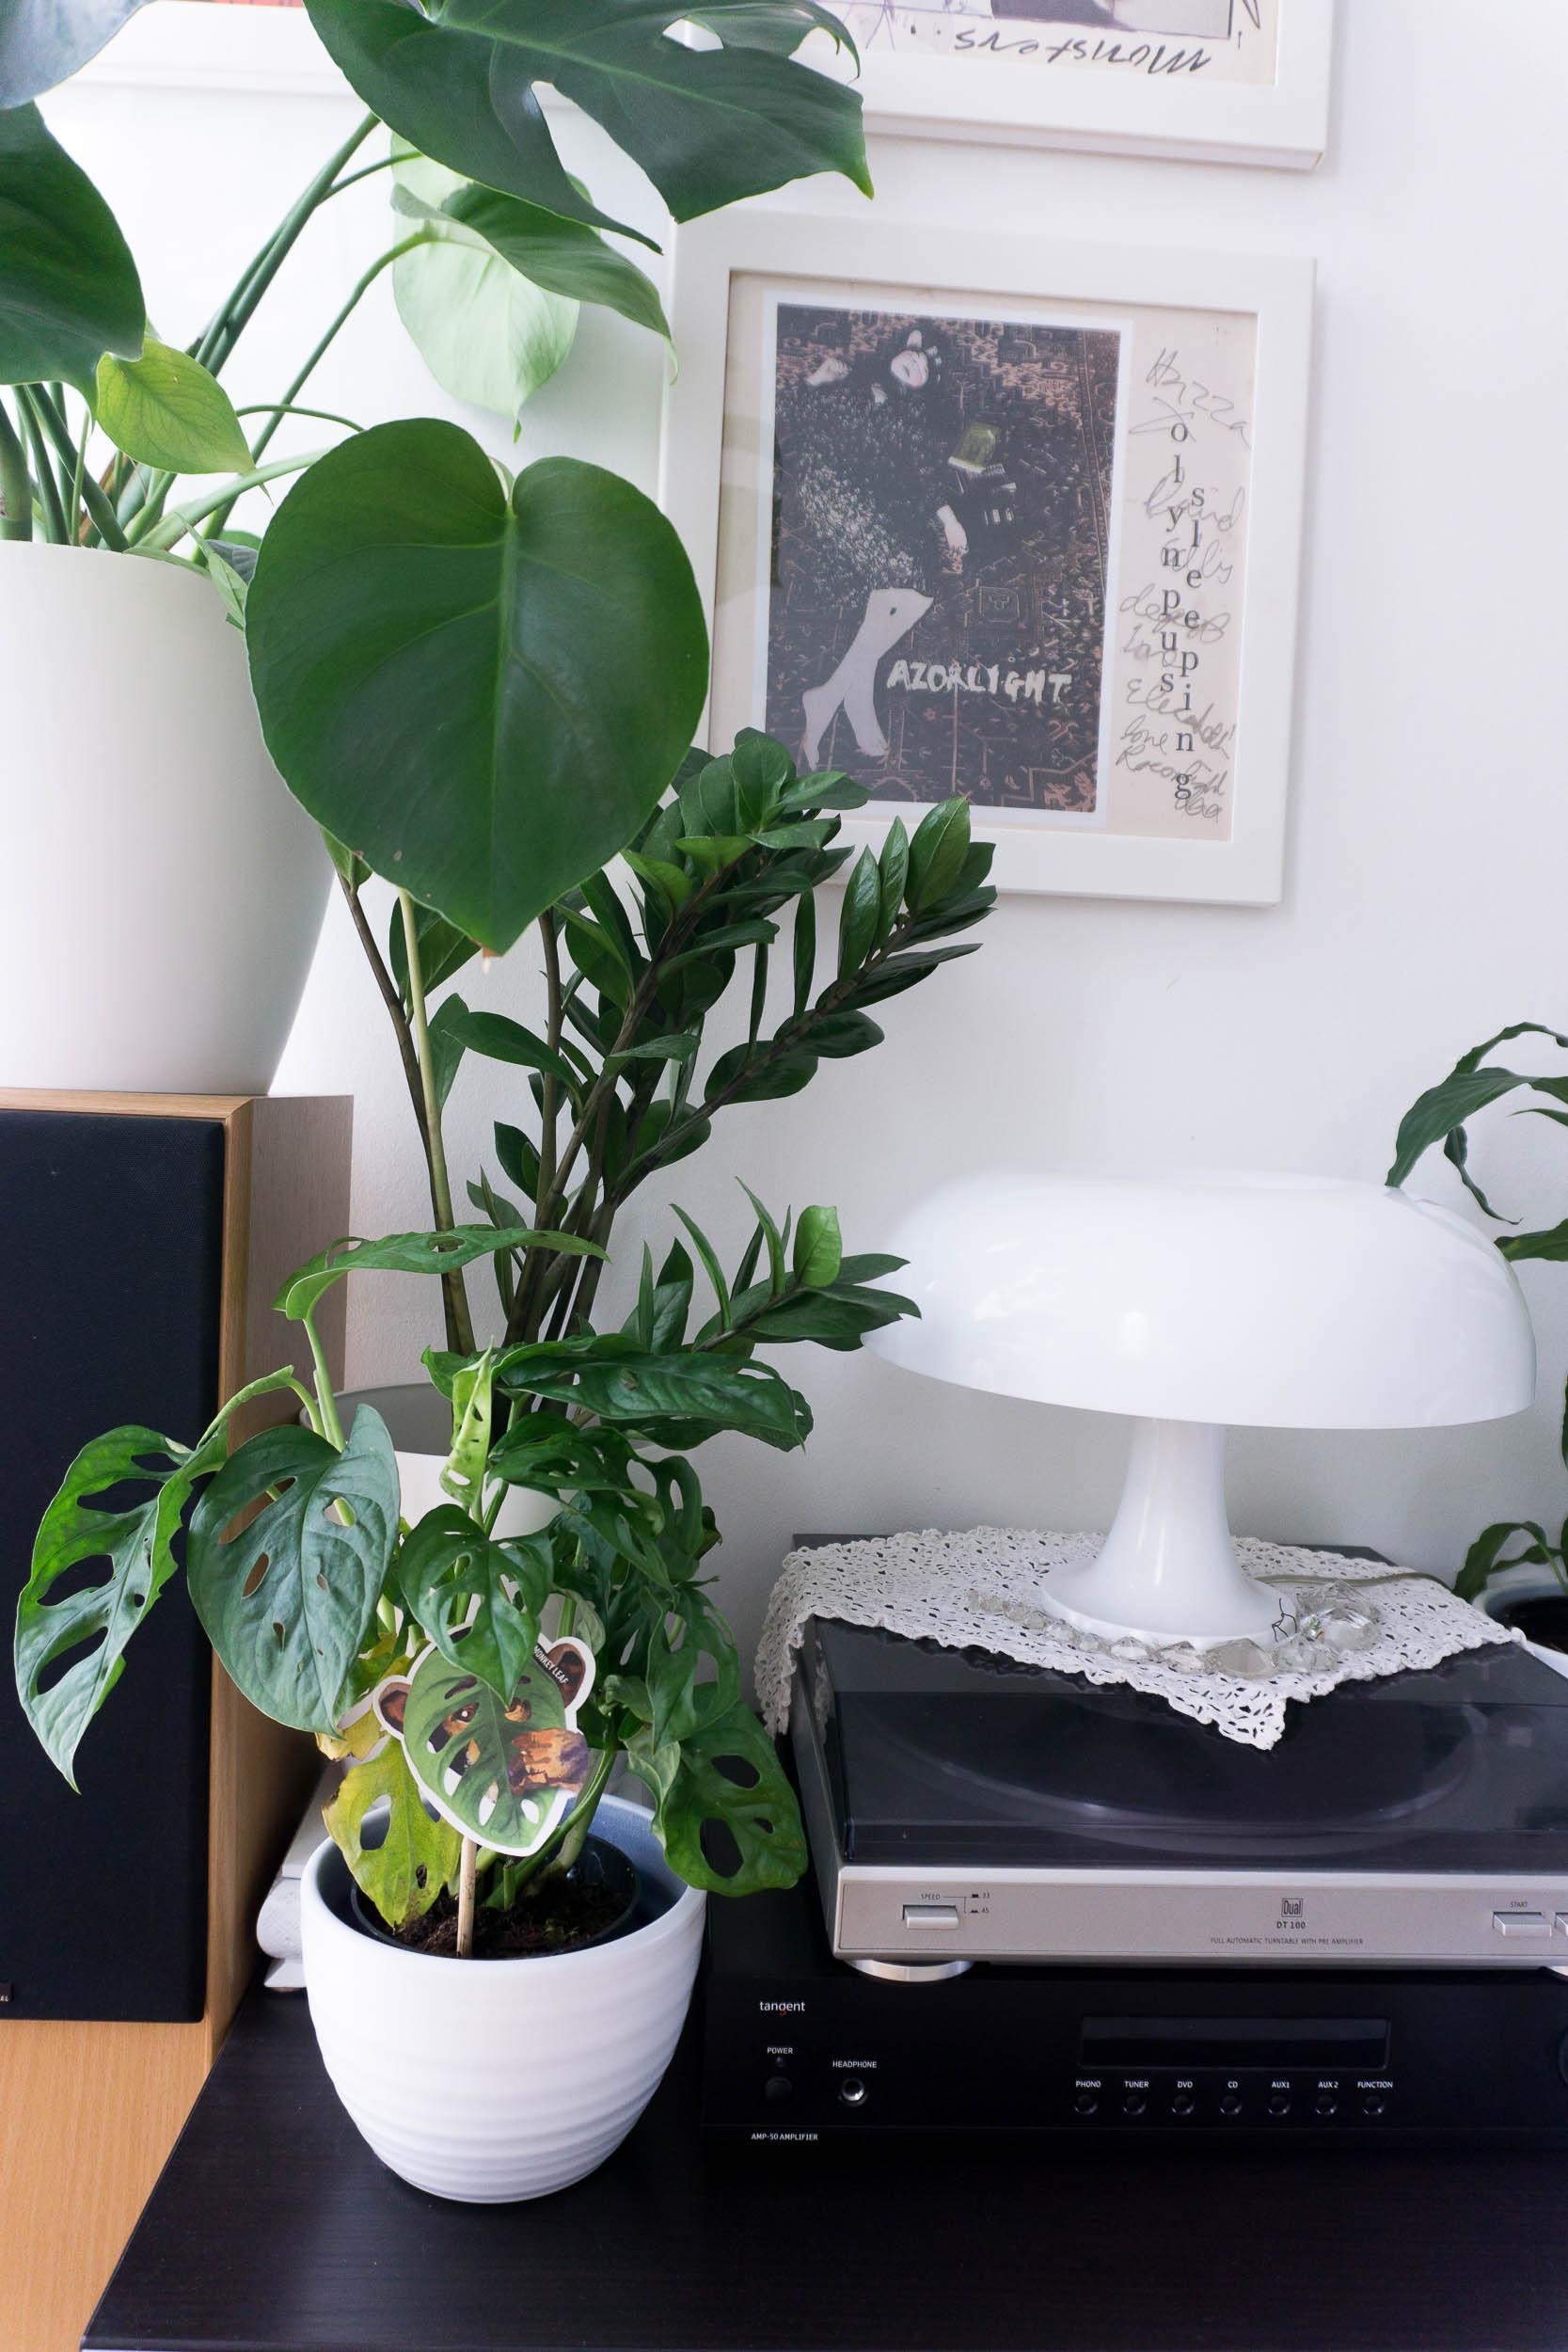 Meine Lieblingspflanze: #monstera obliqua
#indoorgarden #plantlover #urbangarden 